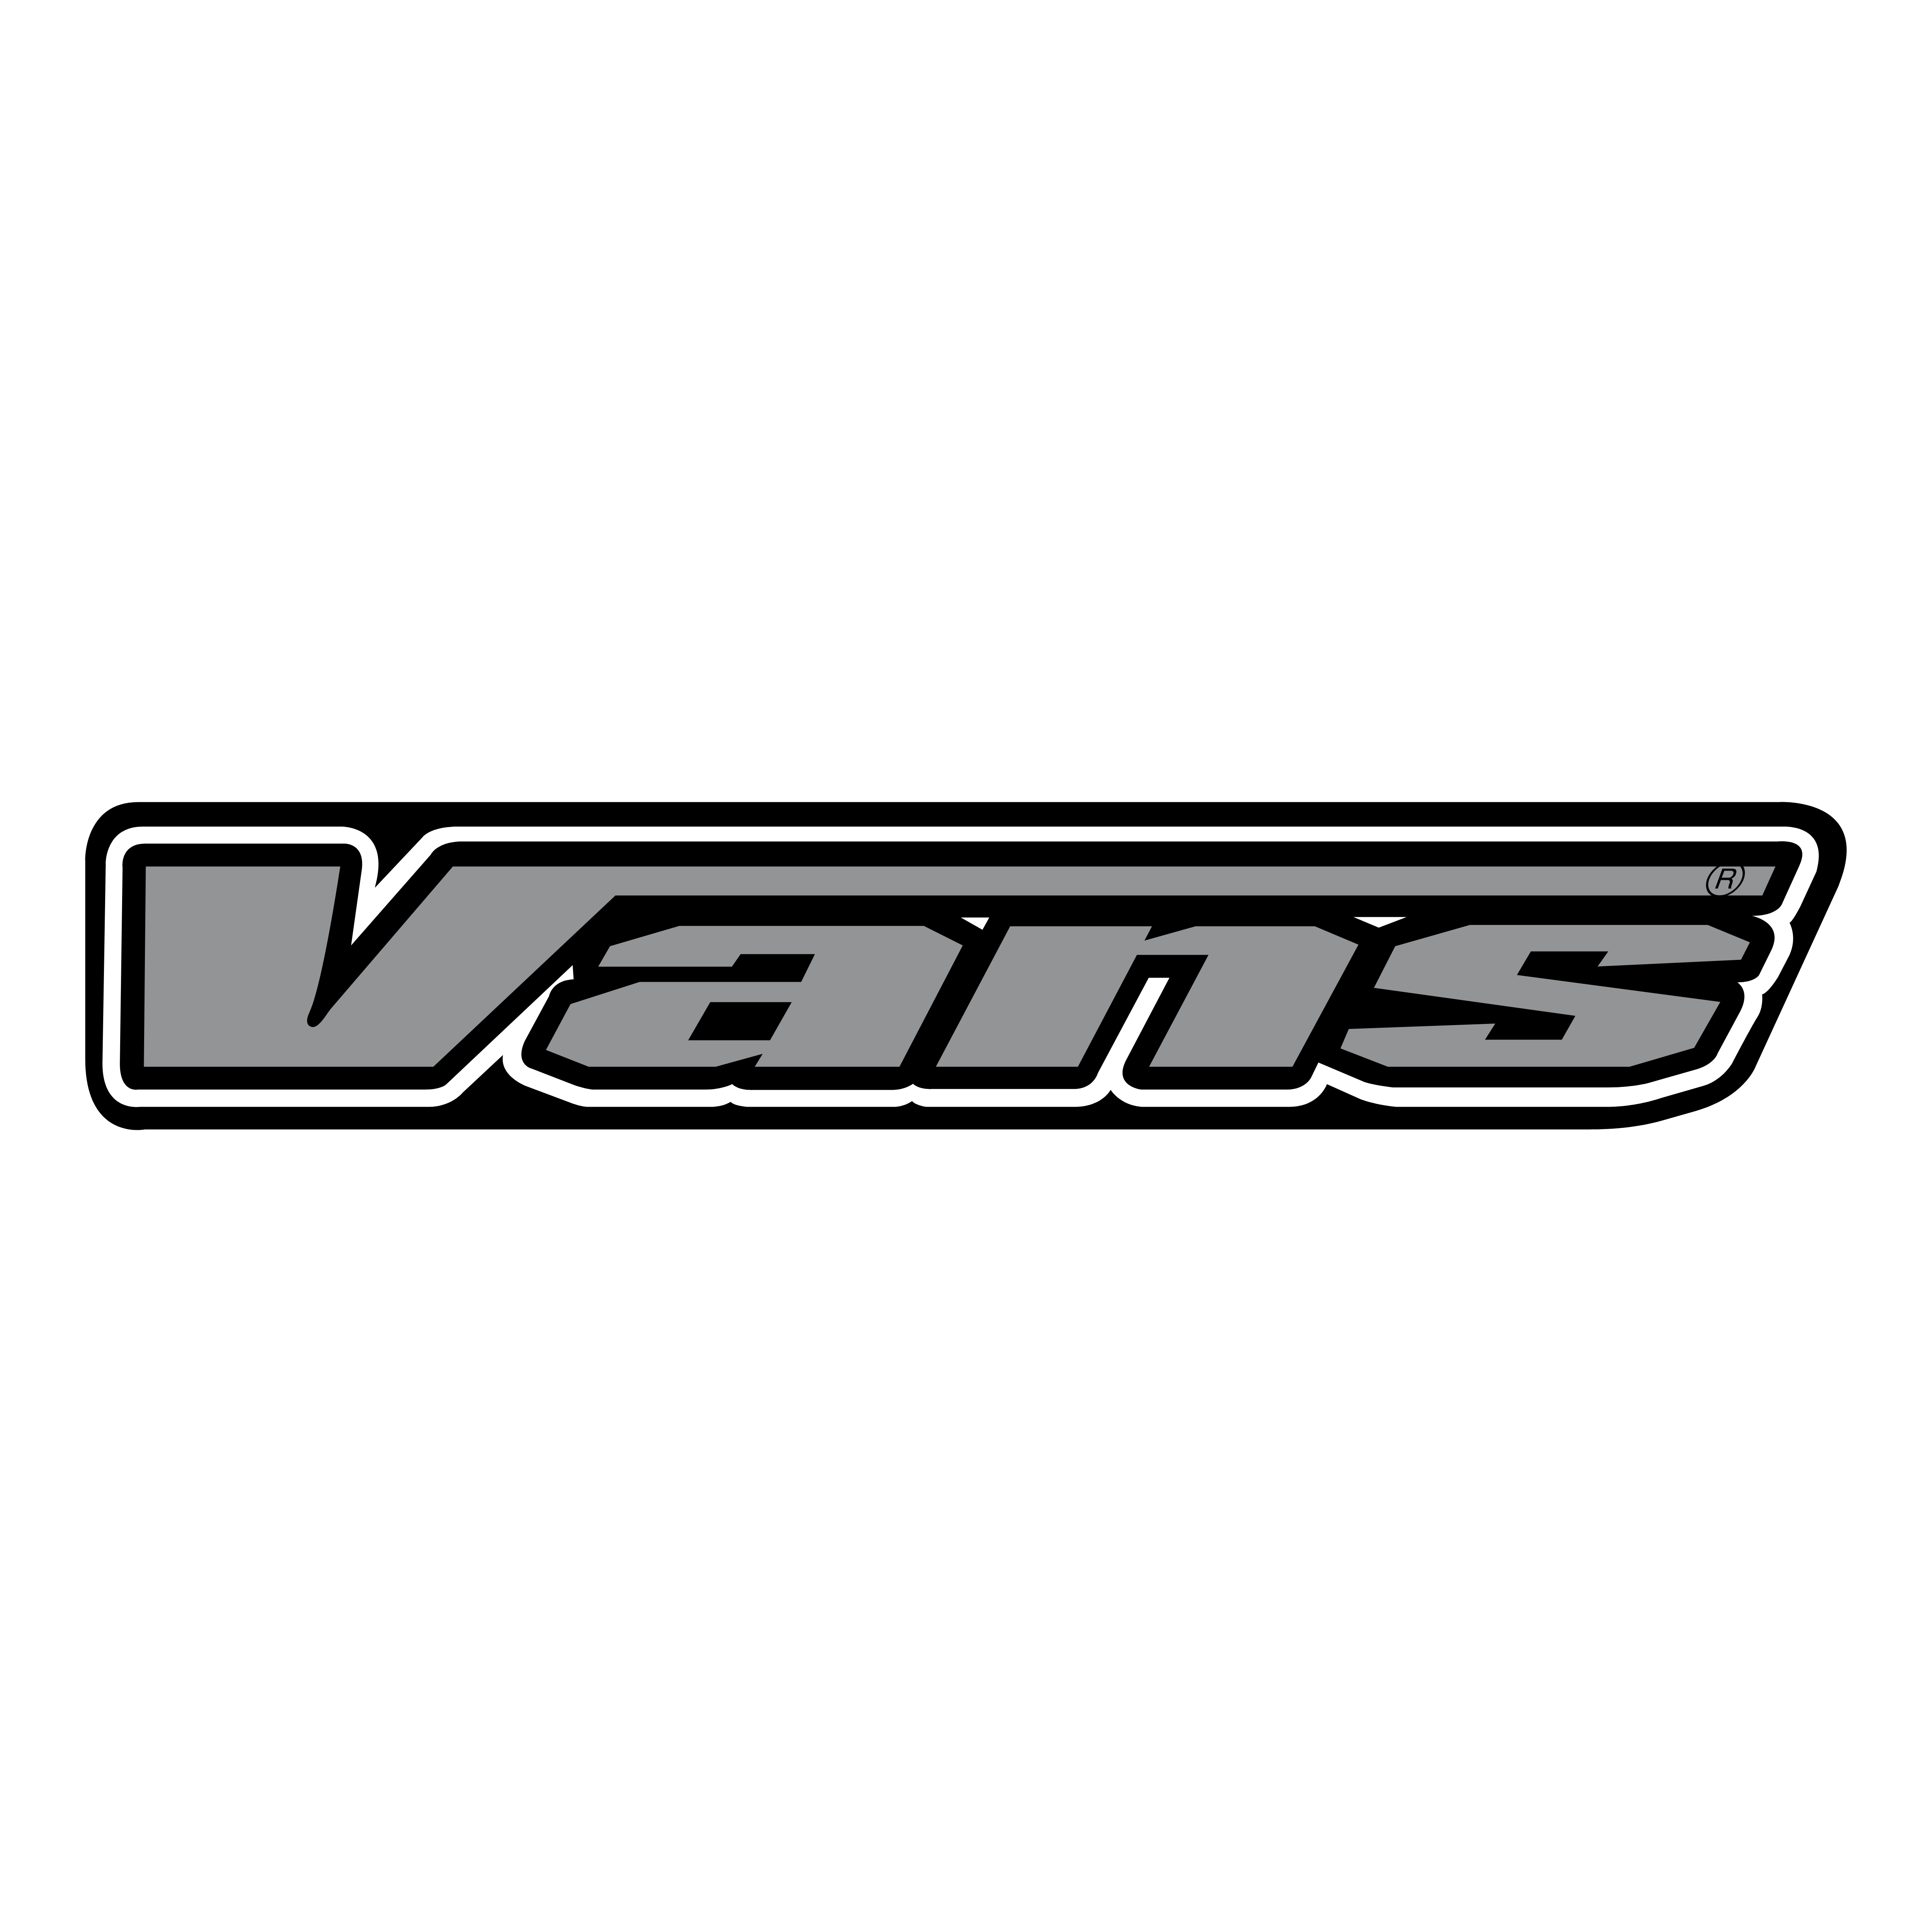 Grey Vans Logo - Vans – Logos Download